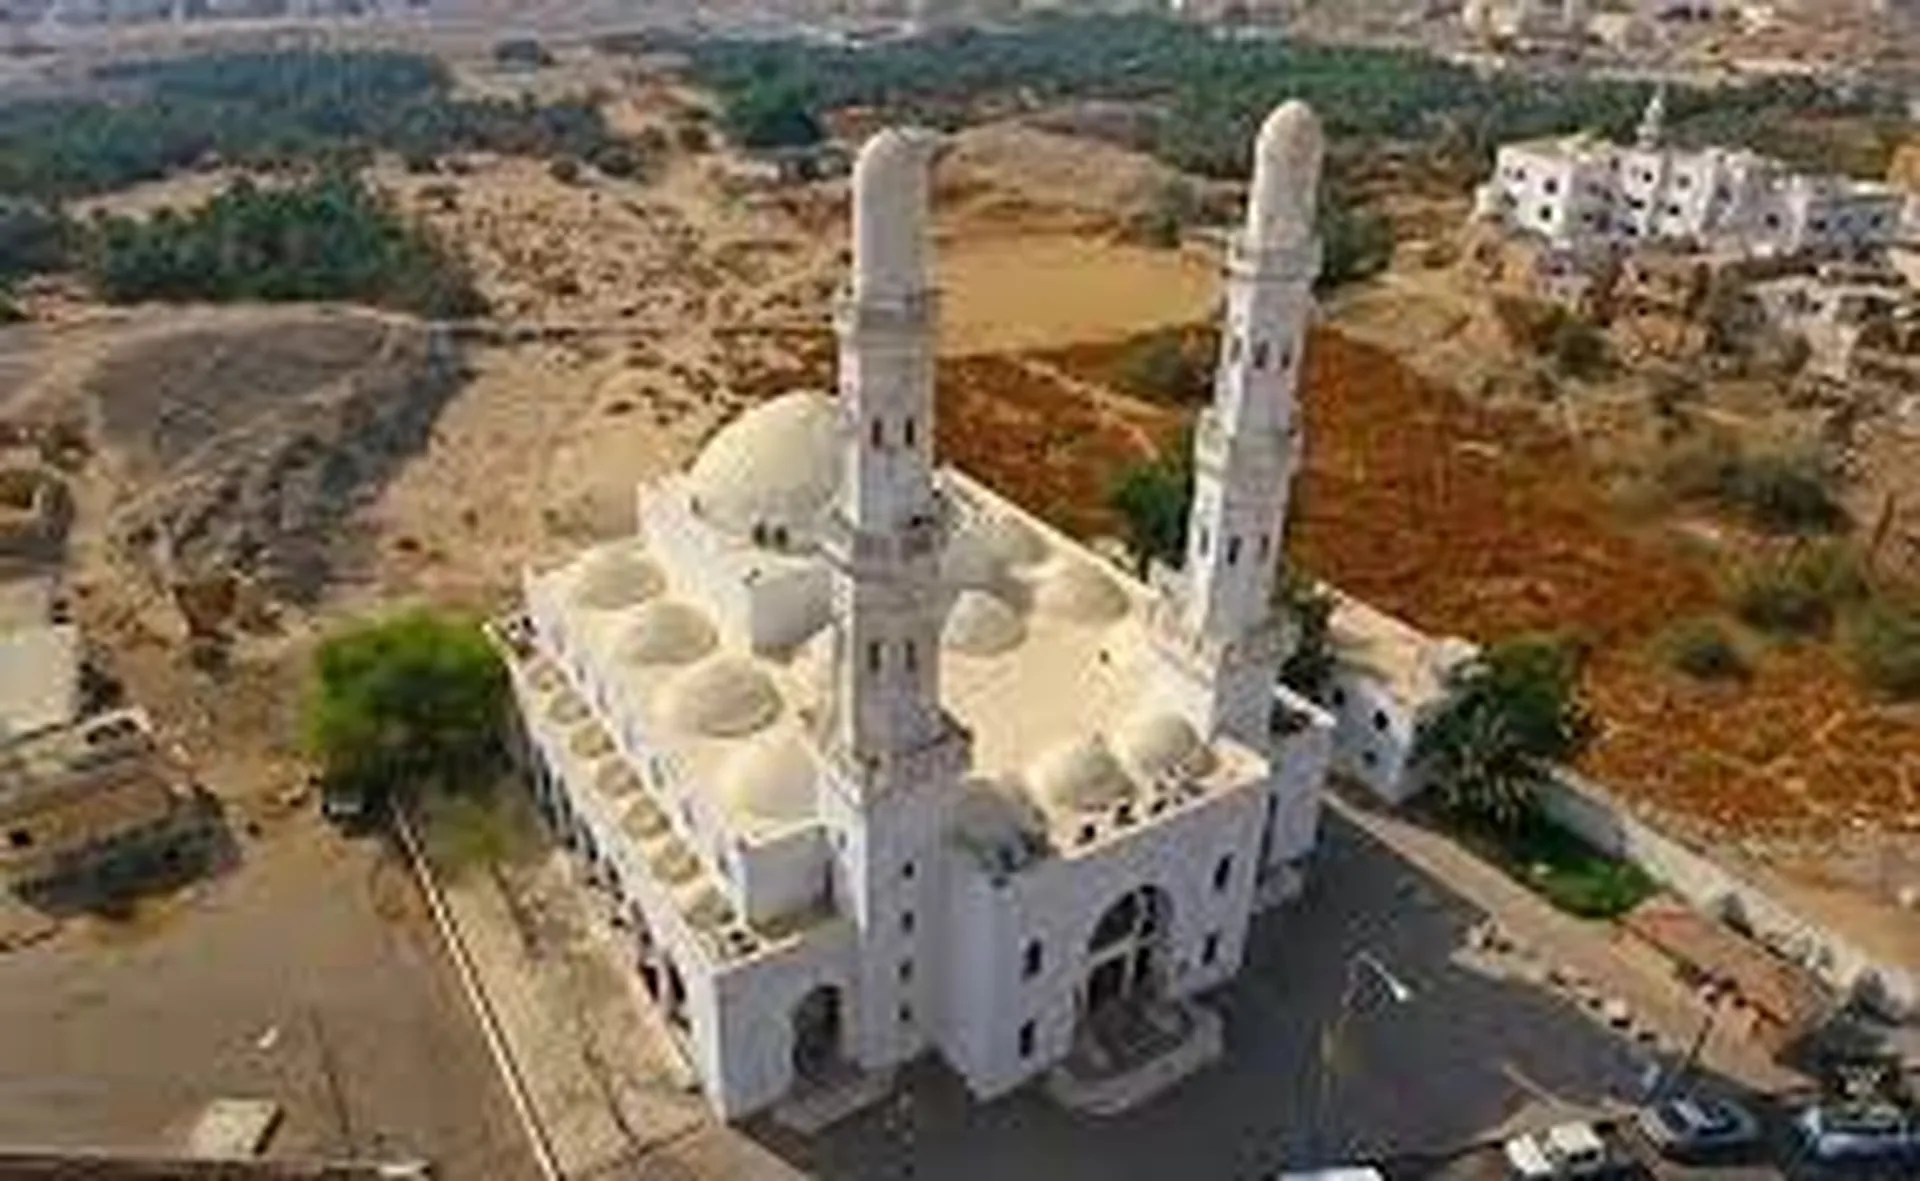 Mosque of Badr